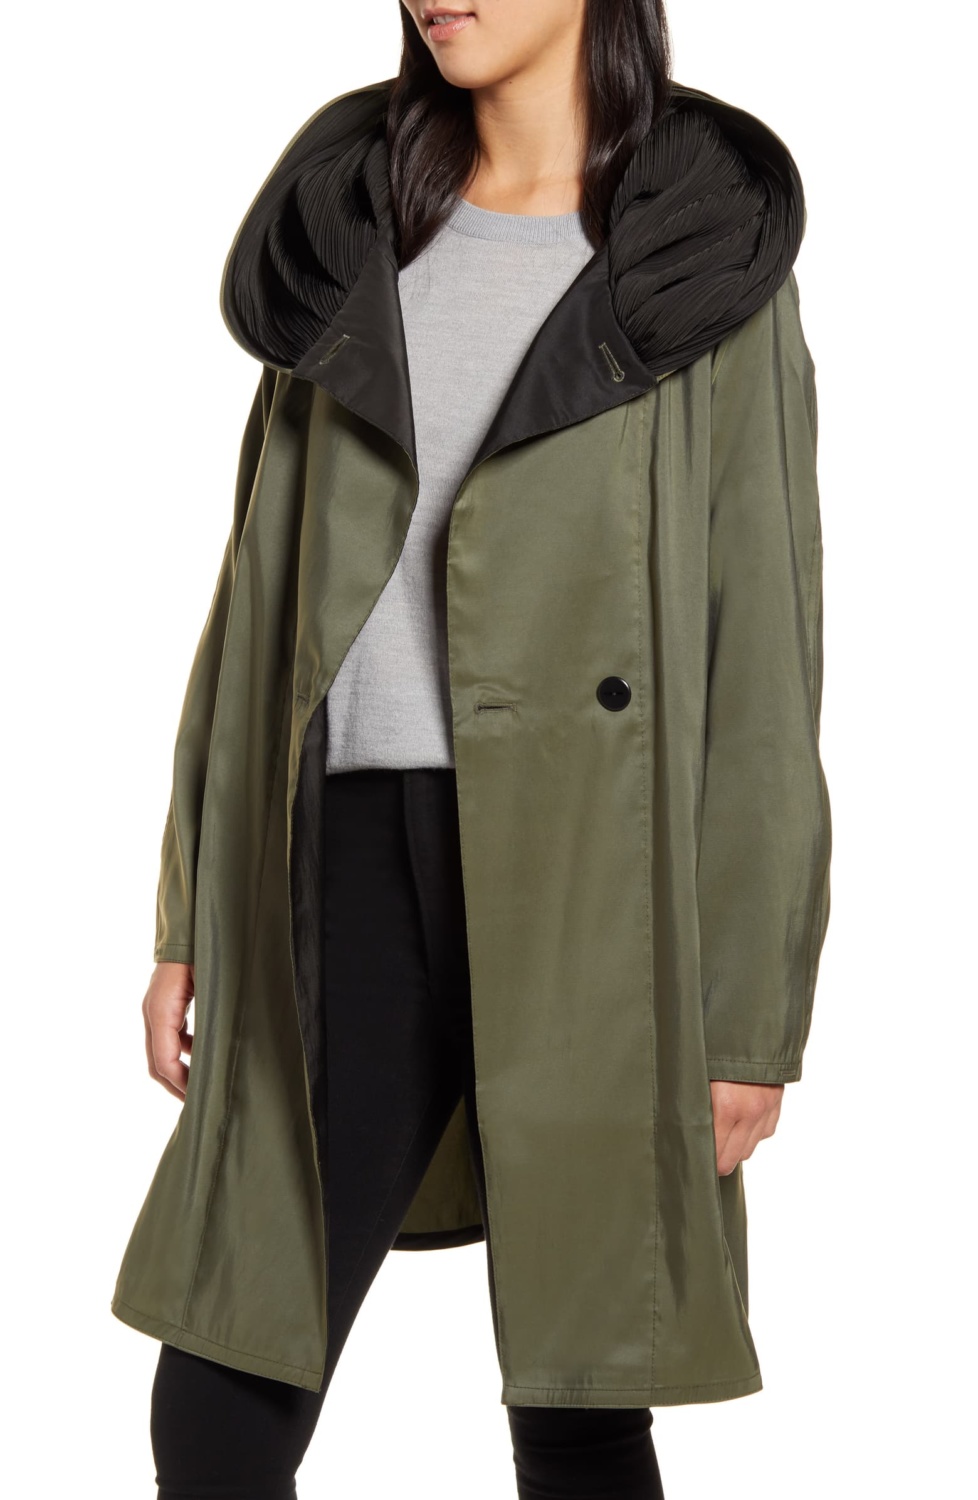 Mycra Pac reversible travel raincoat in olive. Details at une femme d'un certain age.